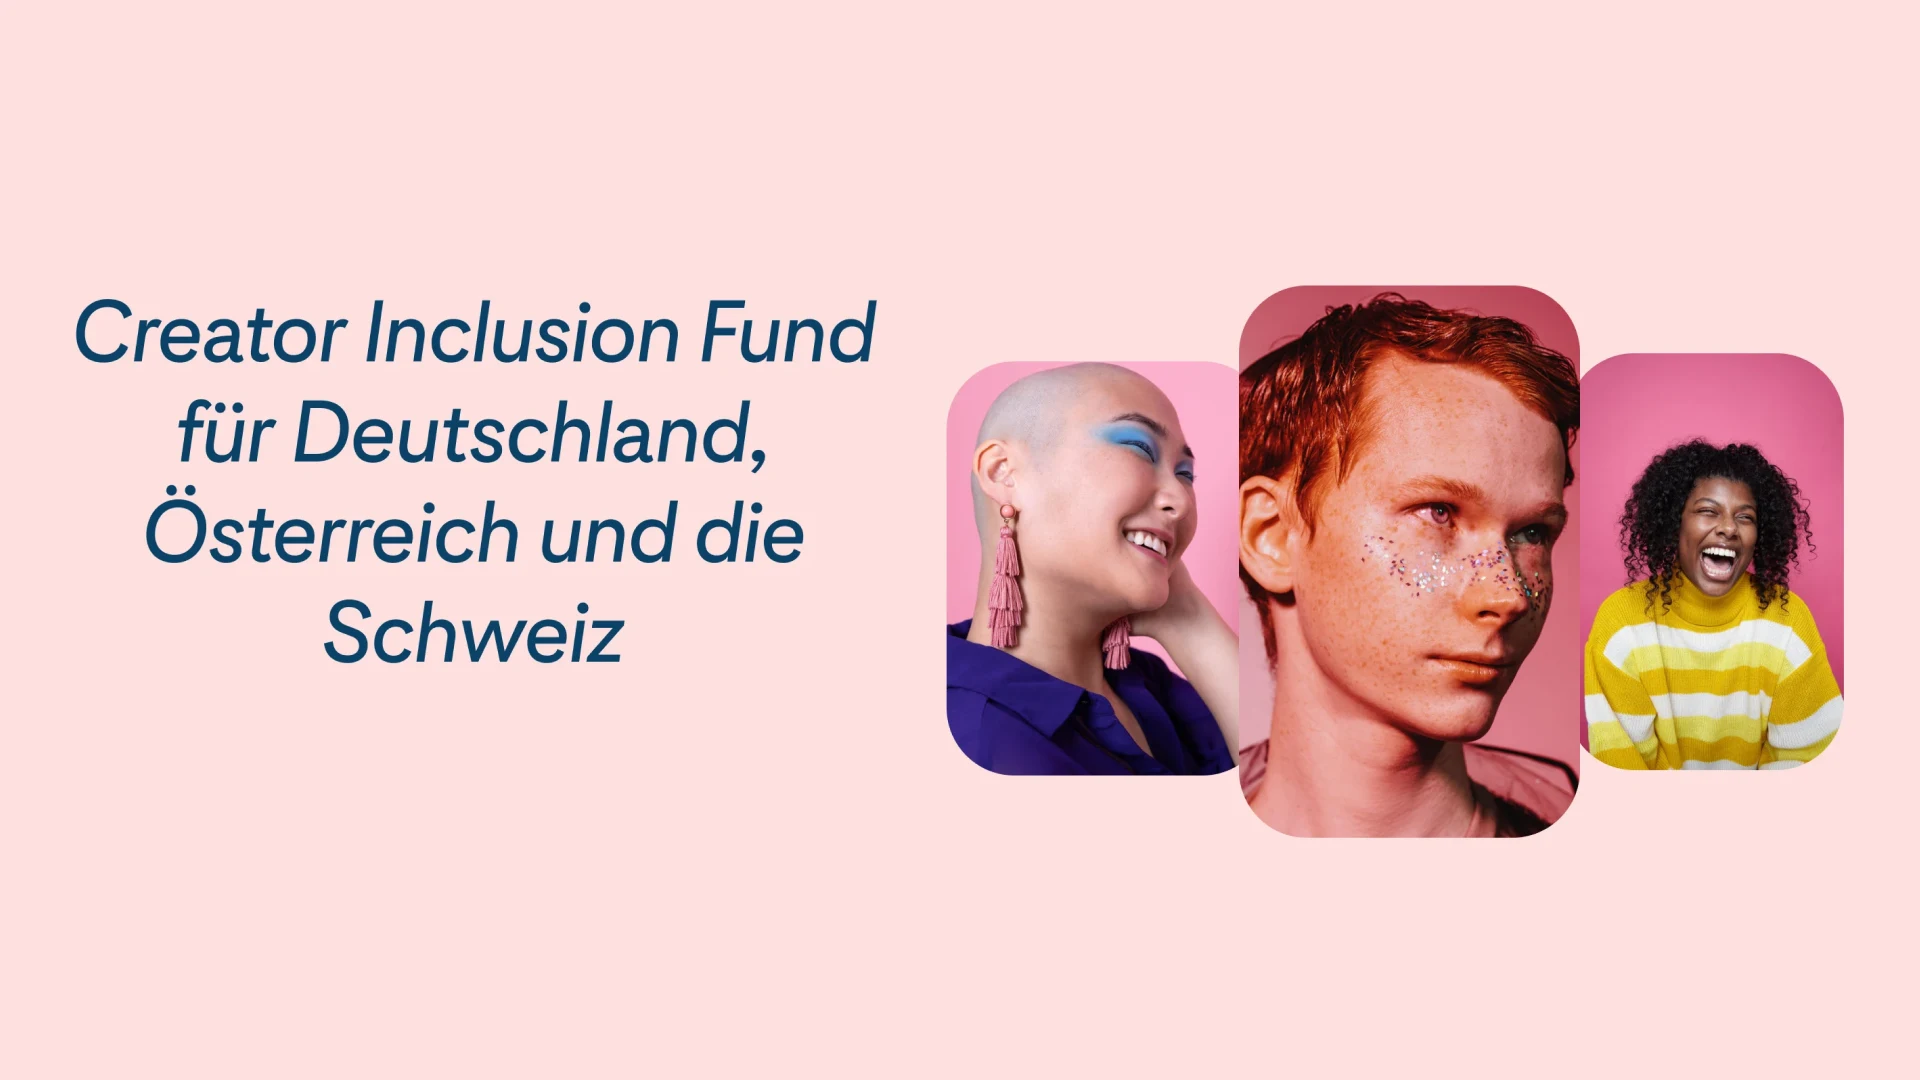 Eine Ankündigung der Einführung des Creator Inclusion Fund von Pinterest in Deutschland befindet sich neben Bildern von drei Personen mit buntem Make-up, die vor einem rosa Hintergrund angeordnet sind